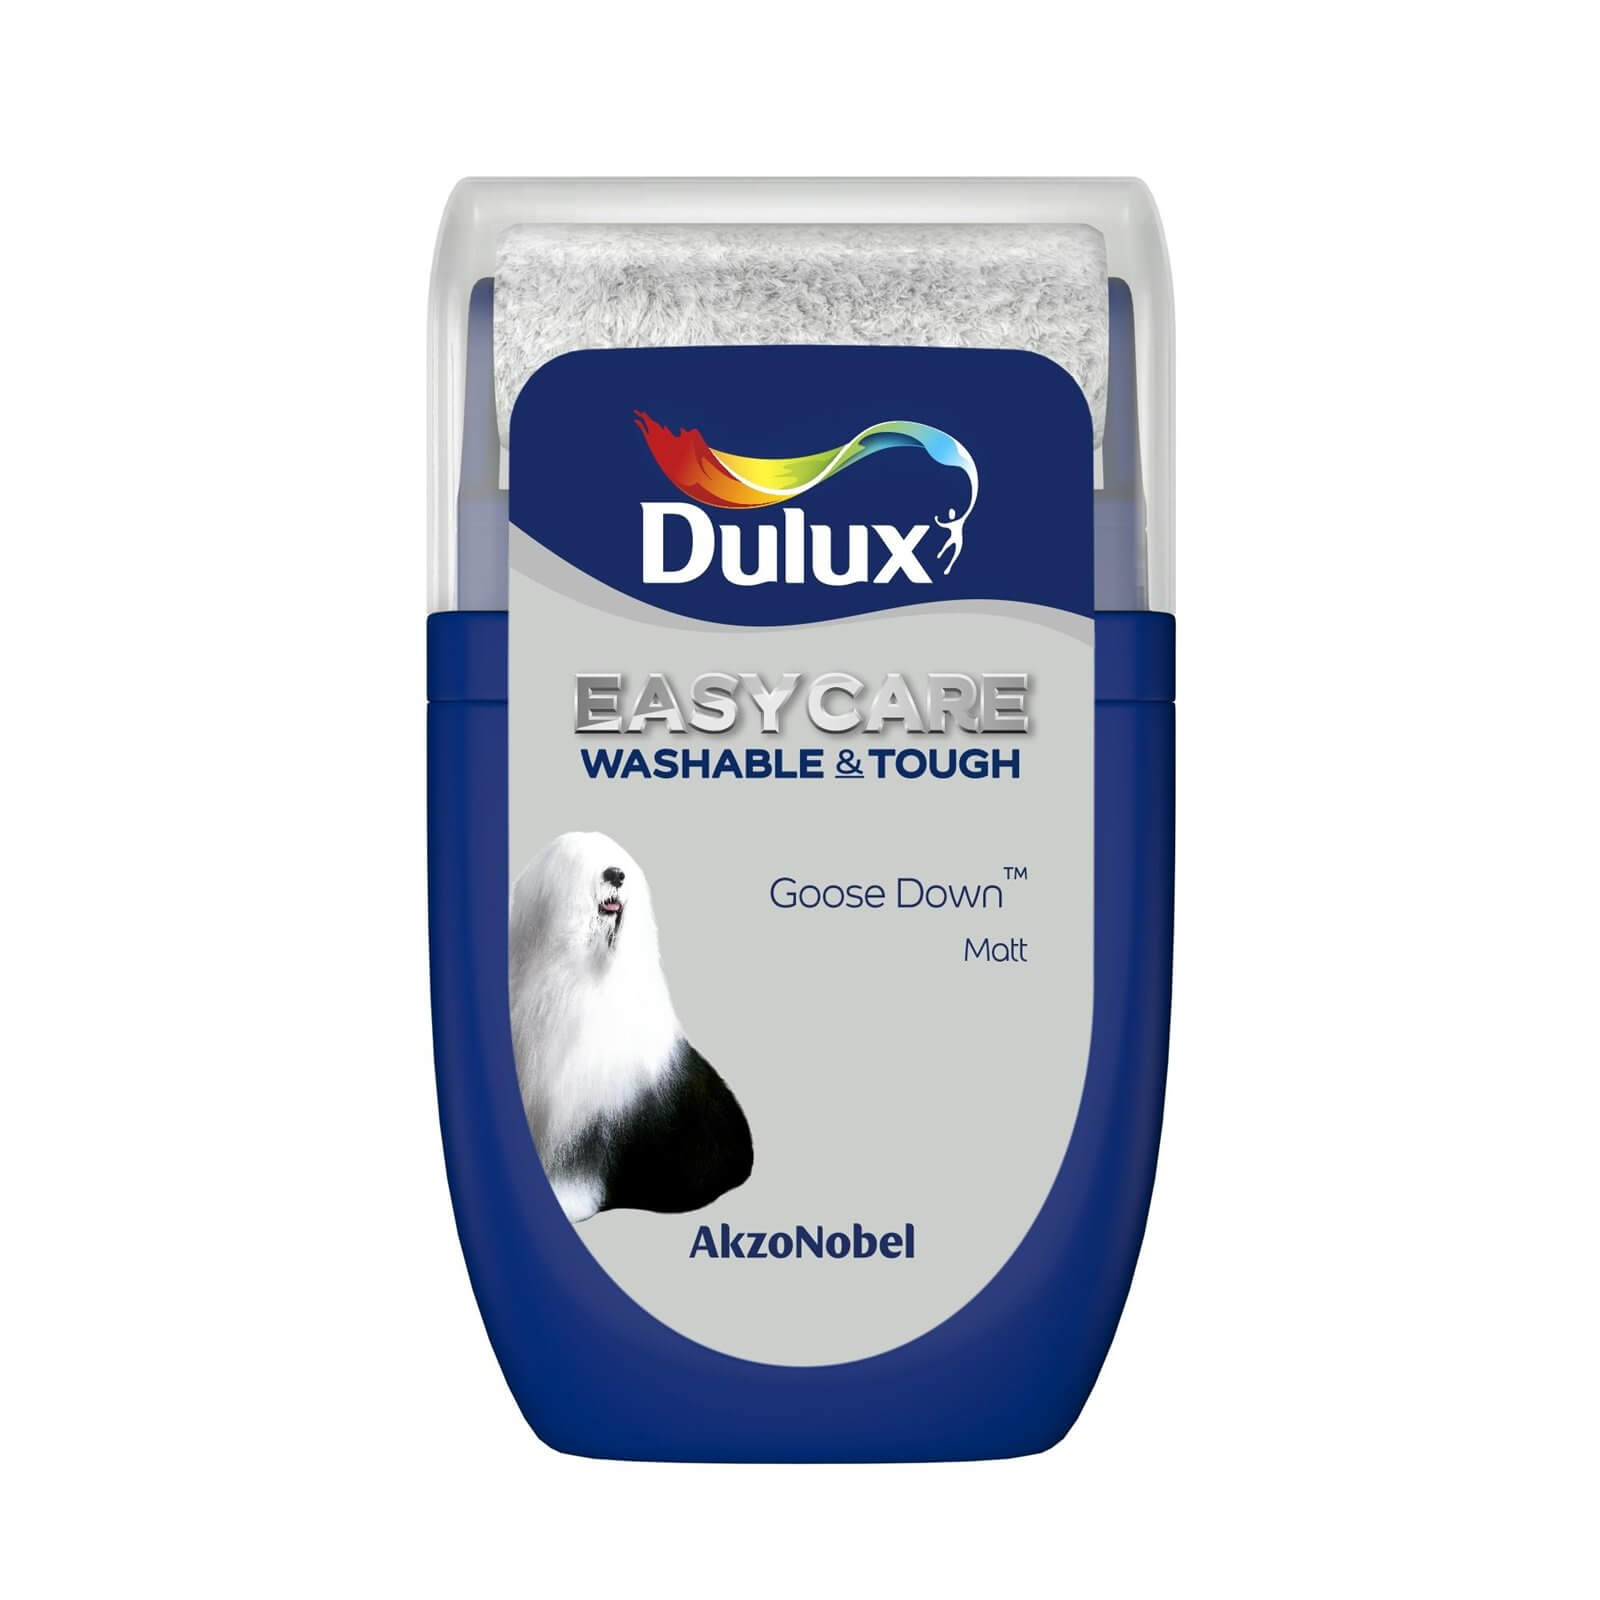 Dulux Easycare Washable & Tough Matt Paint Goose Down - Tester 30ml